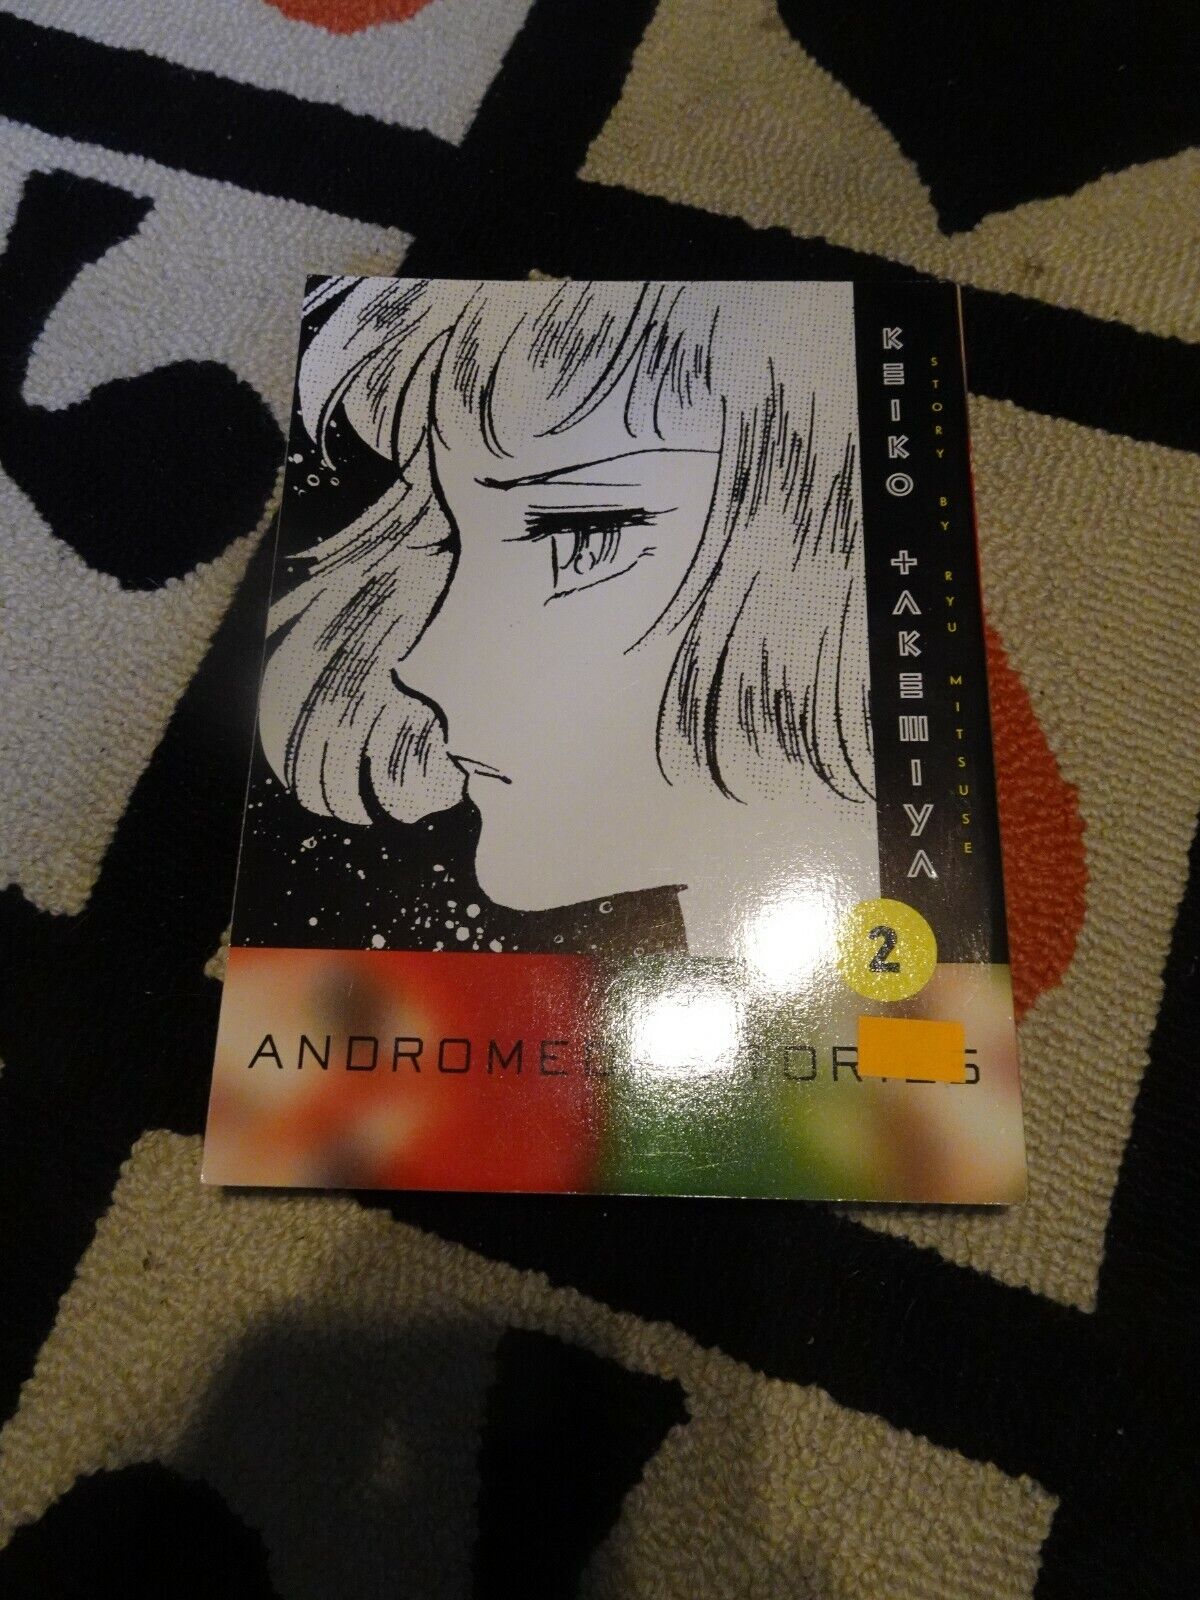 Andromeda Stories Manga by Keiko Takemiya Volume 2 English